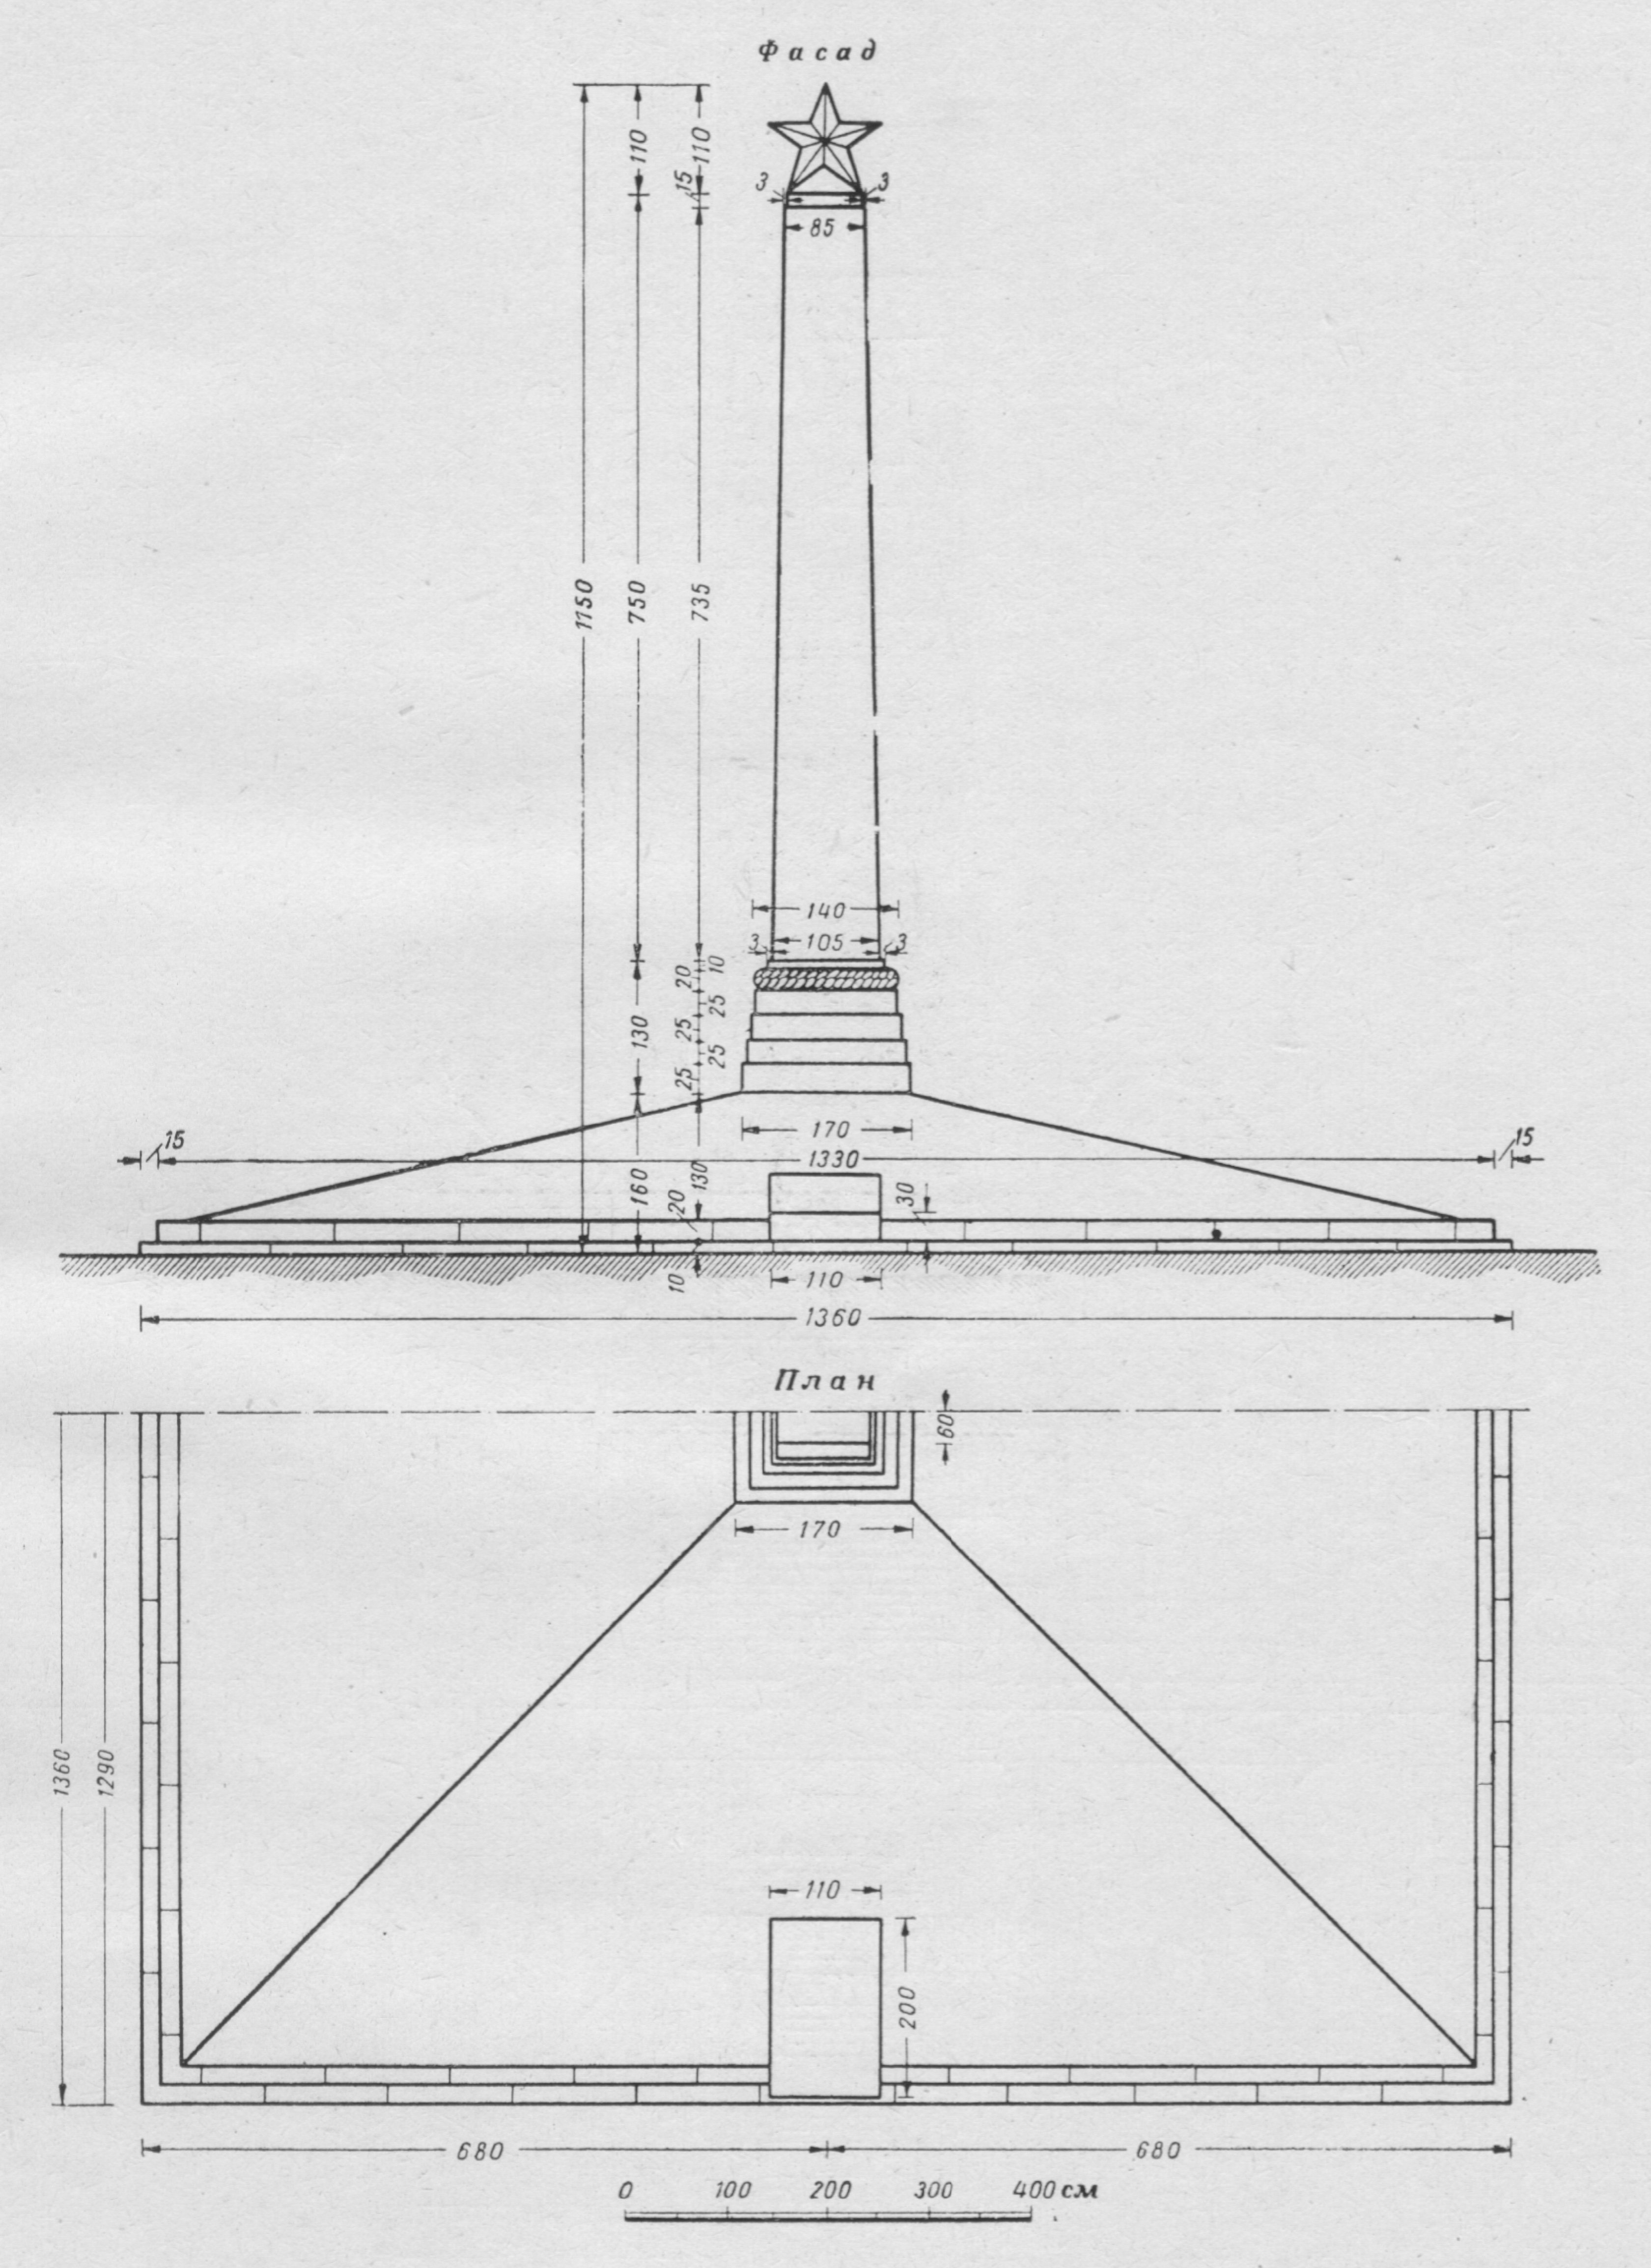 ПРОЕКТ 41. Архитектор ЖУРАВЛЕВ, Б. Н. Памятник представляет собой обелиск, увенчанный звездой и установленный на основании, имеющем четыре уступа